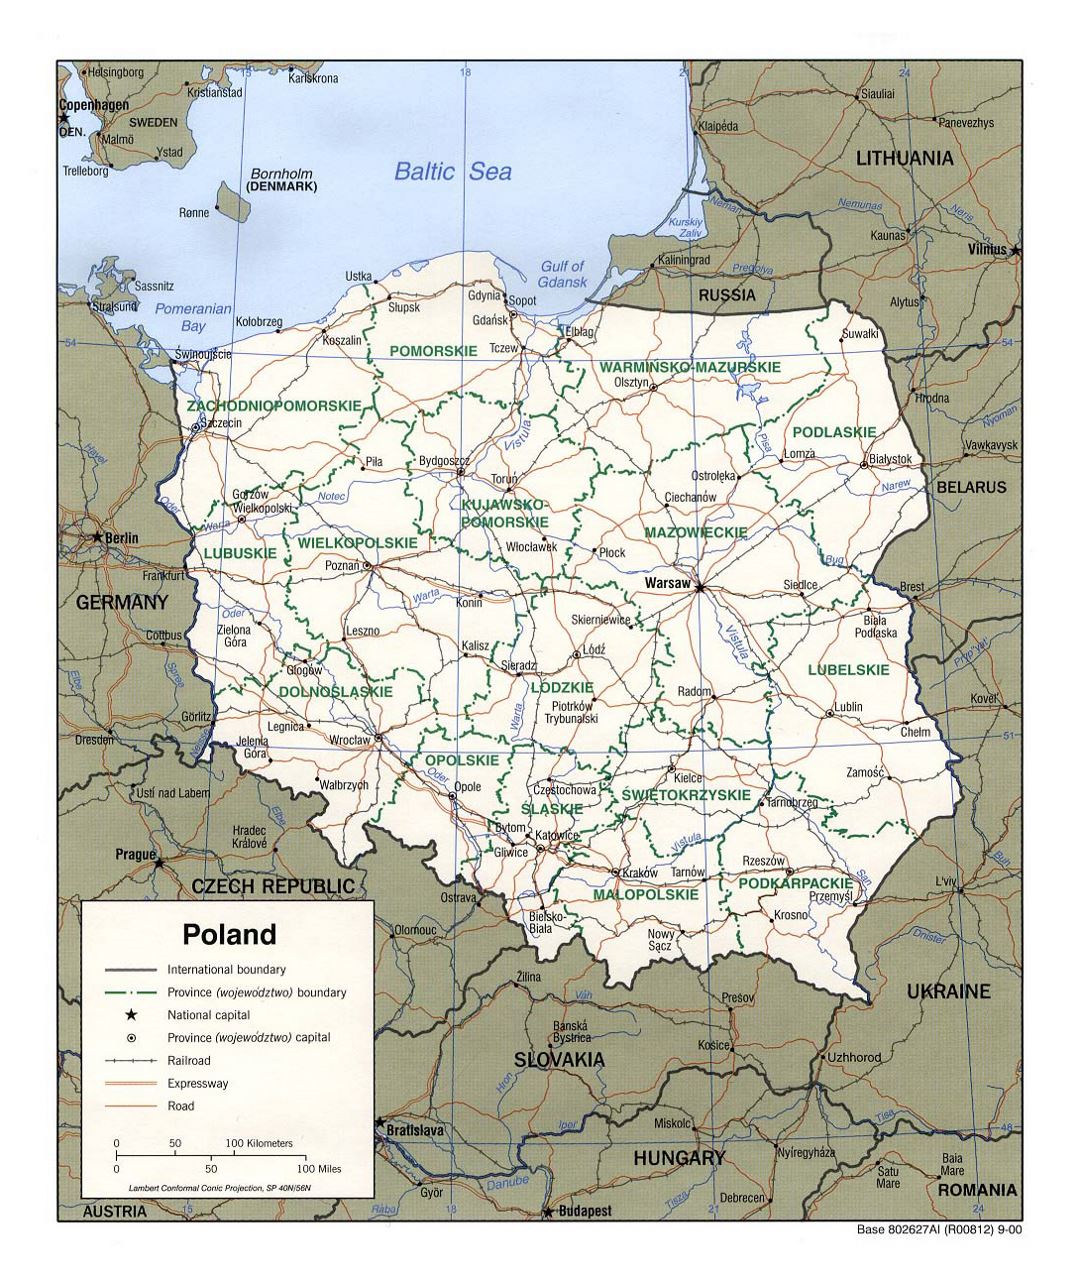 Detallado mapa político y administrativo de Polonia con carreteras, ferrocarriles y principales ciudades - 2000